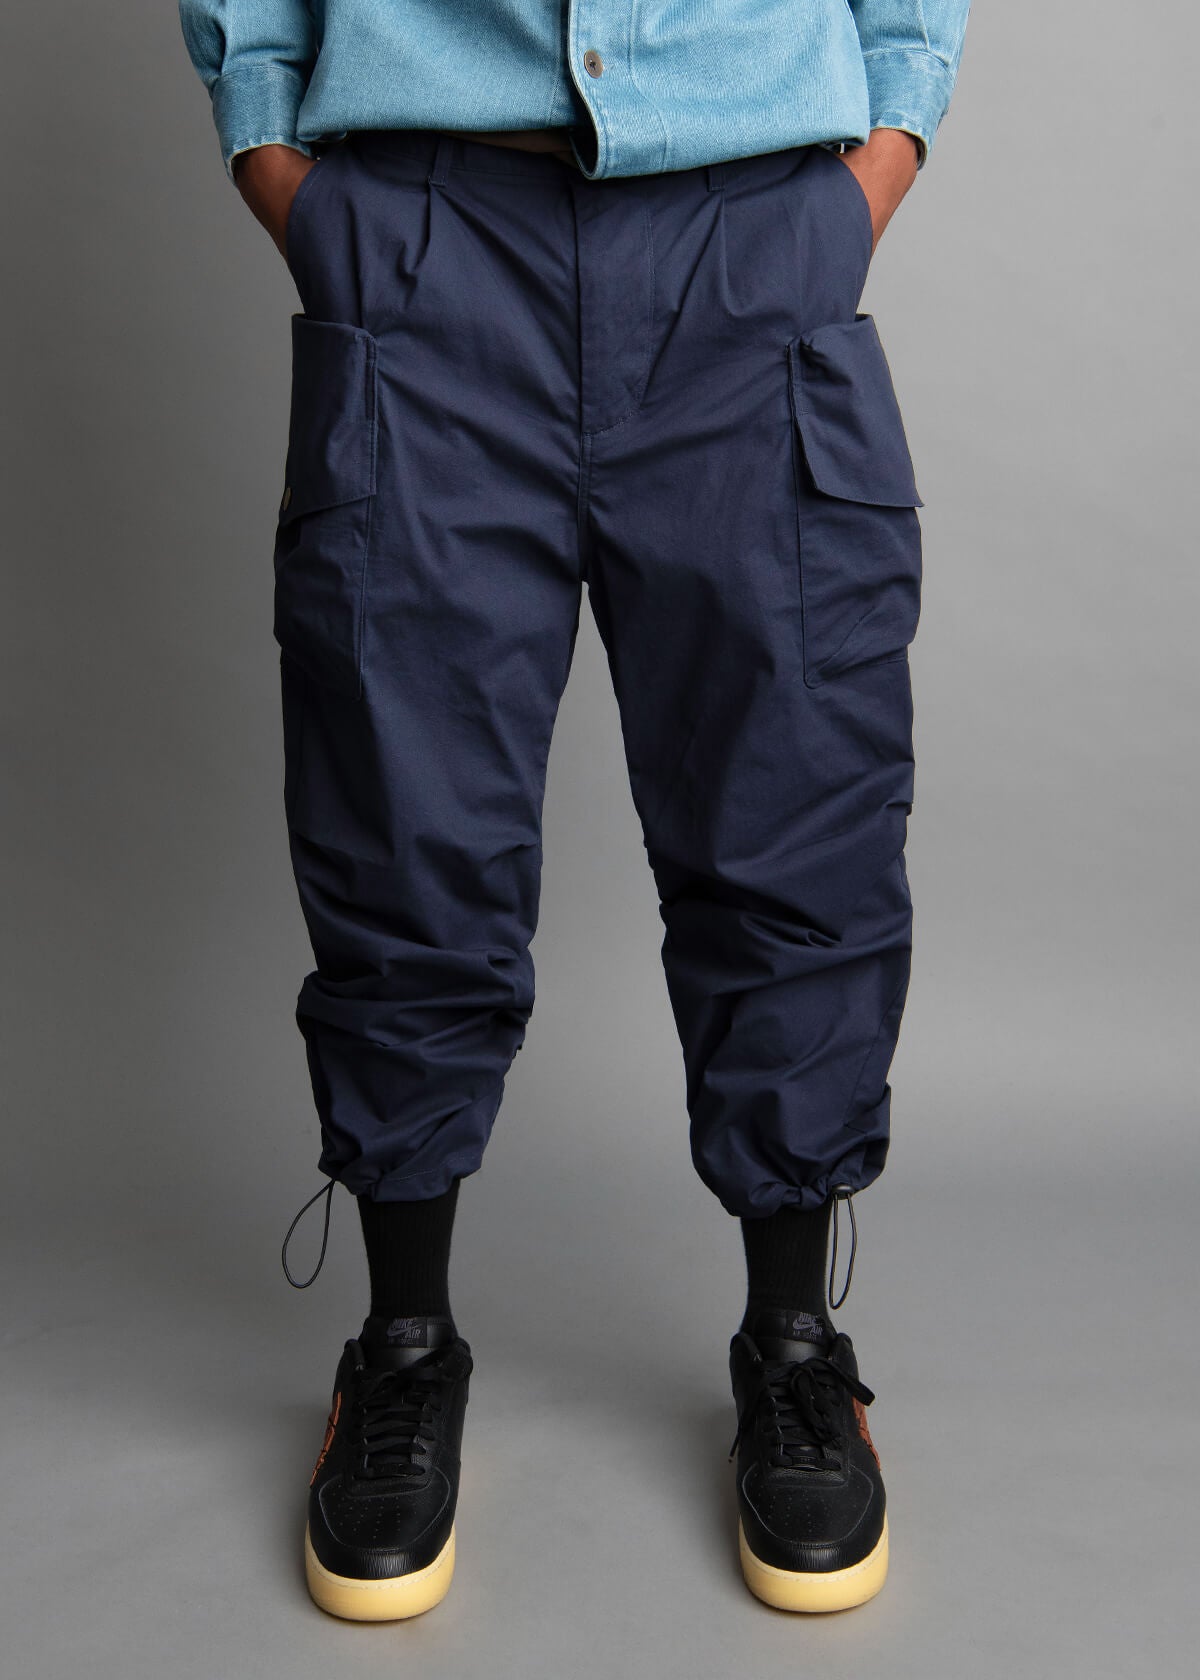 men's cargo pants in navy blue